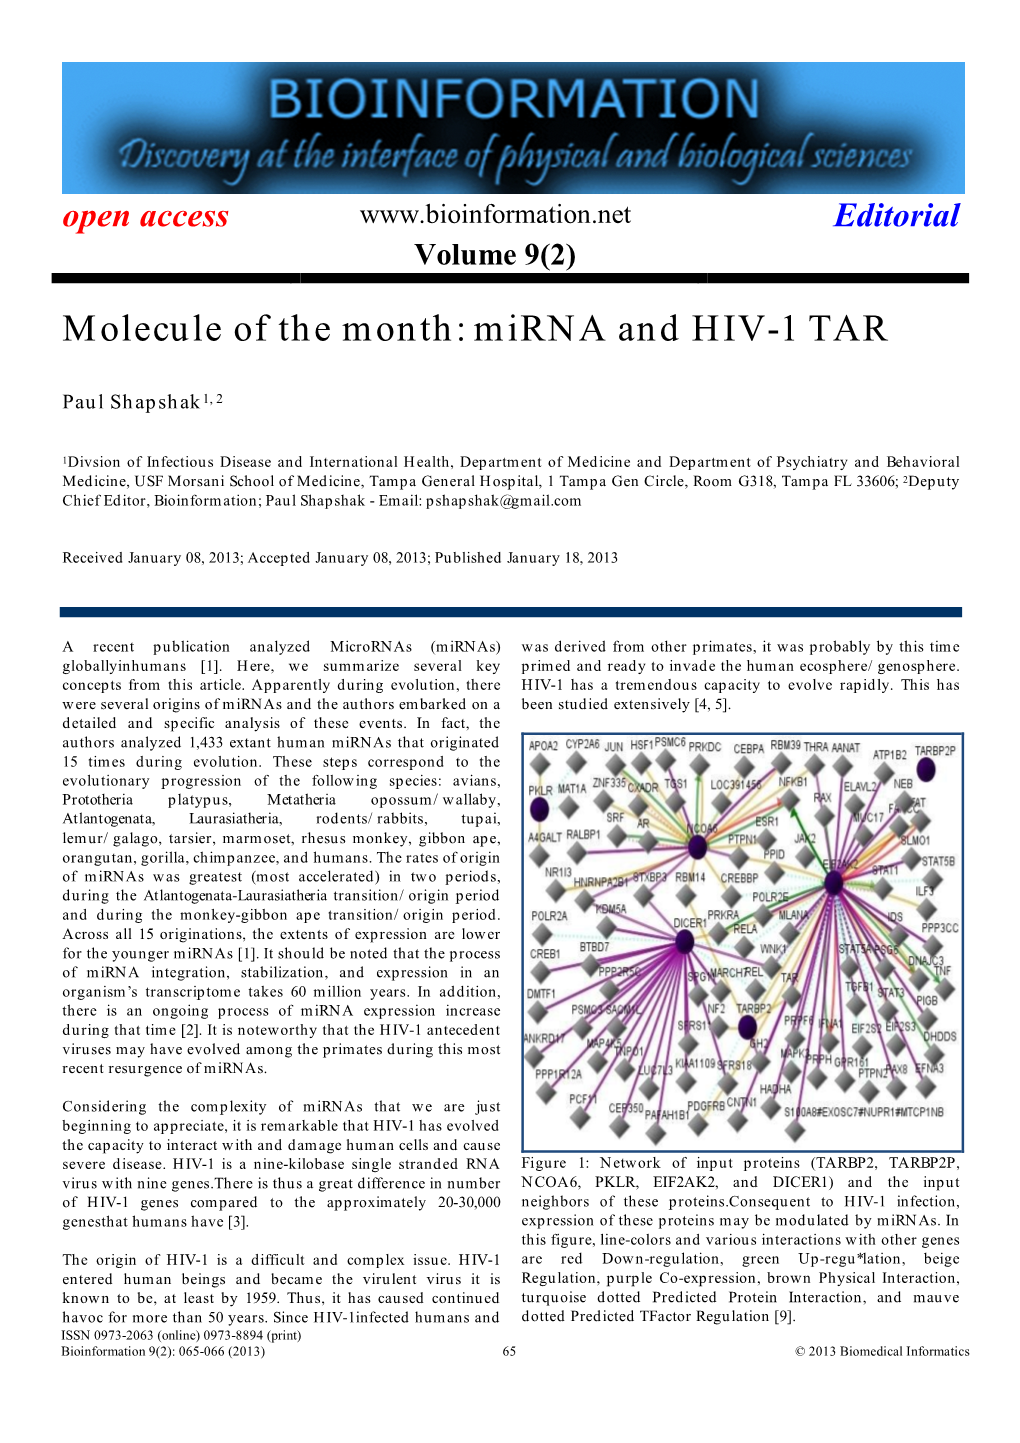 Mirna and HIV-1 TAR